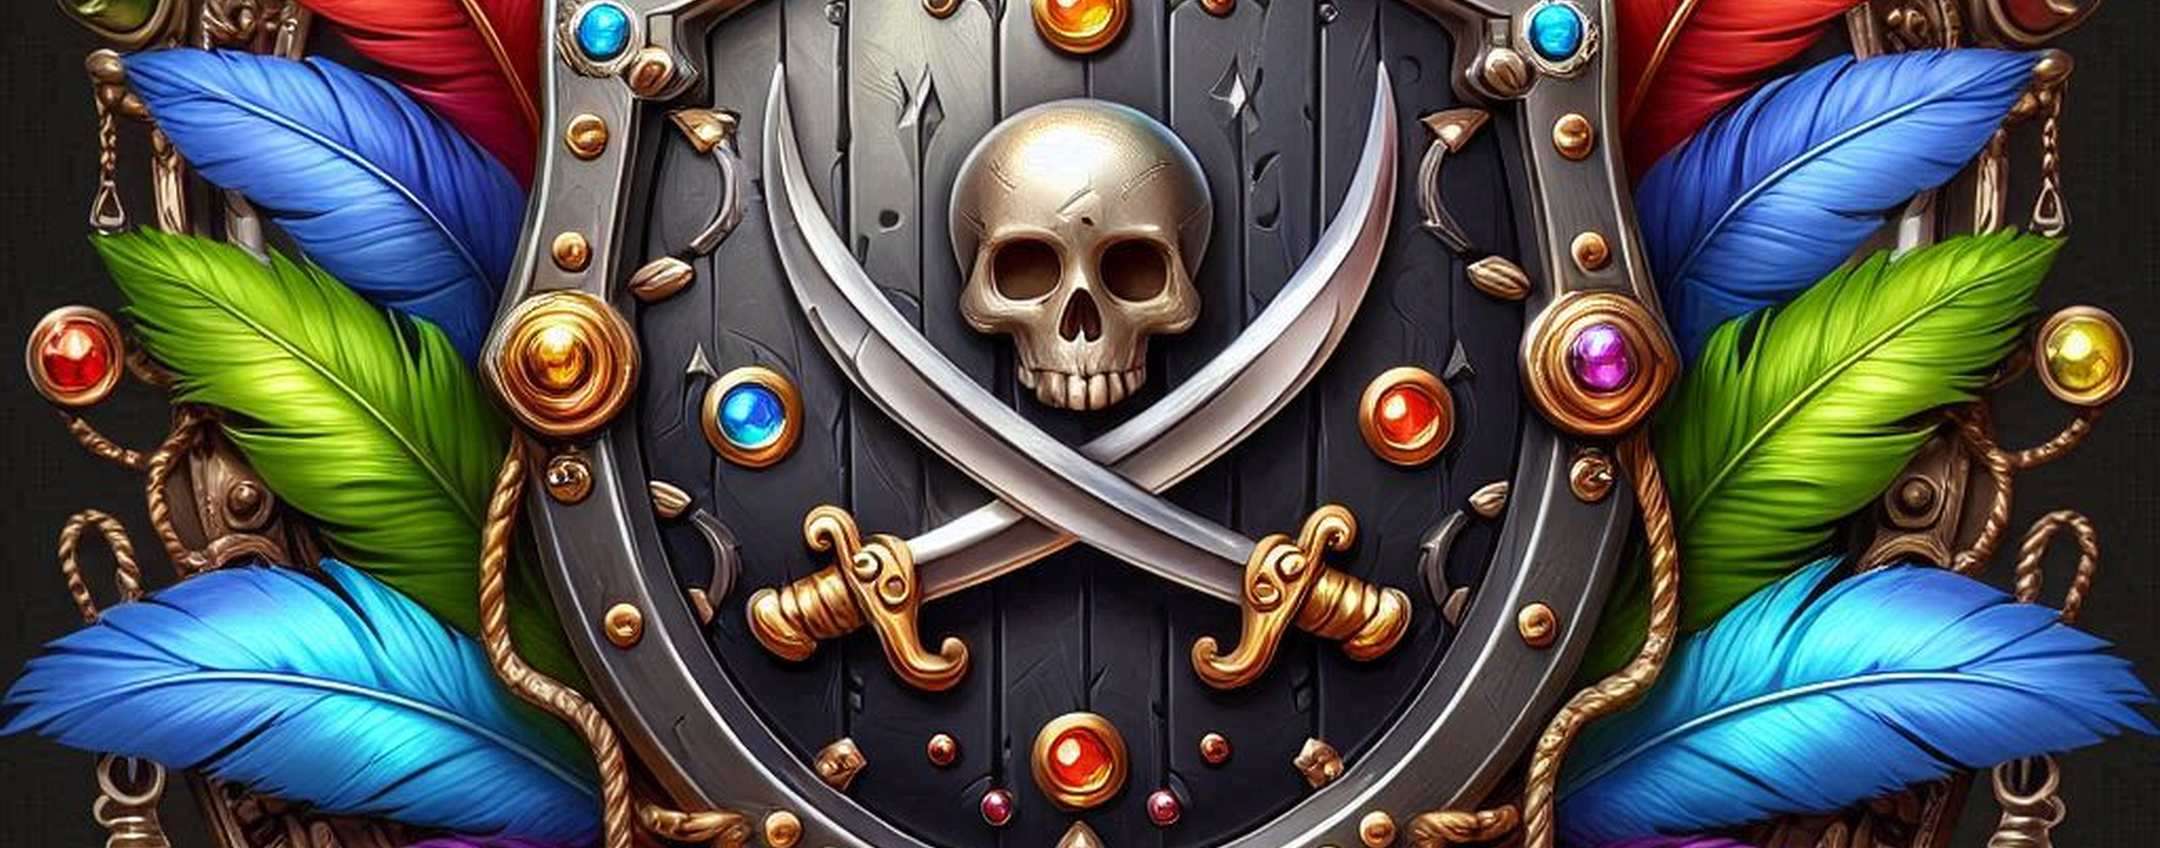 Piracy Shield